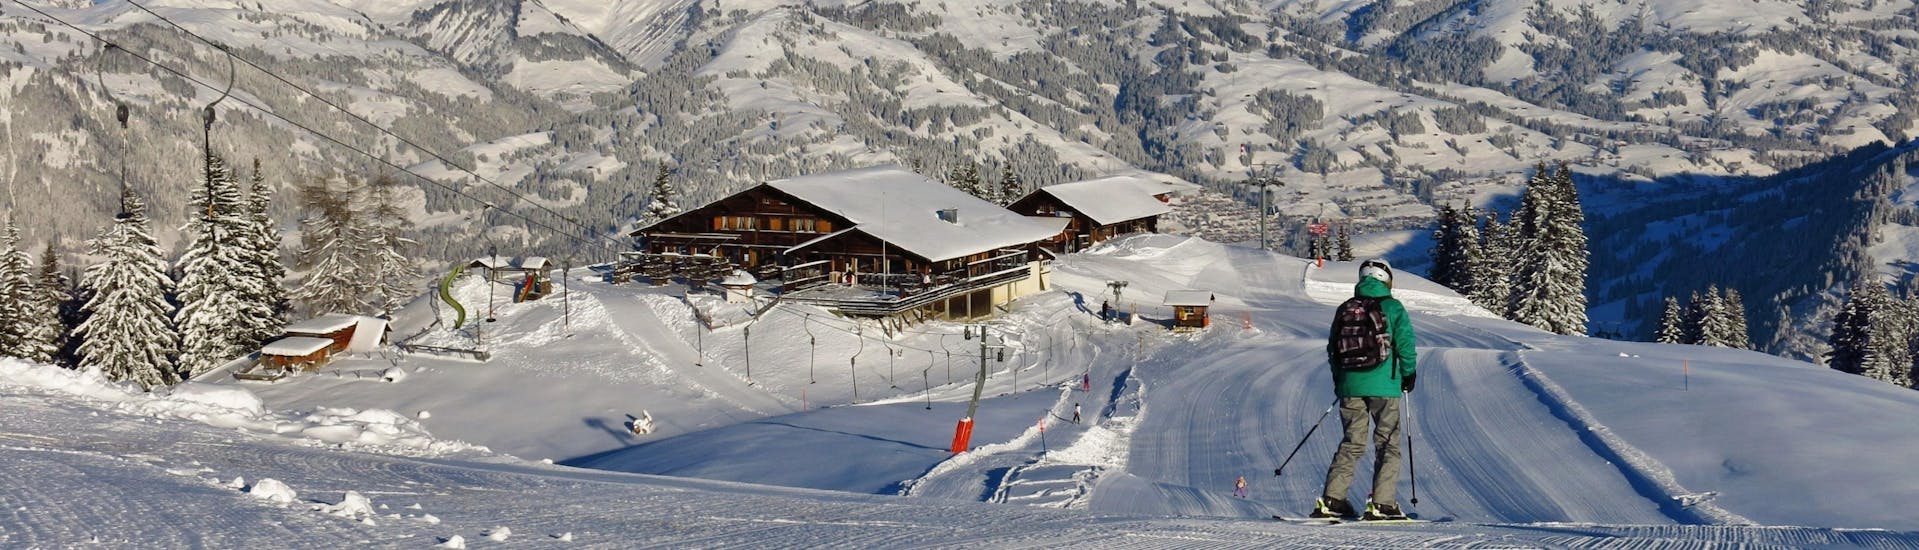 Adultos y niños esquiando en la estación de esquí de Gstaad.